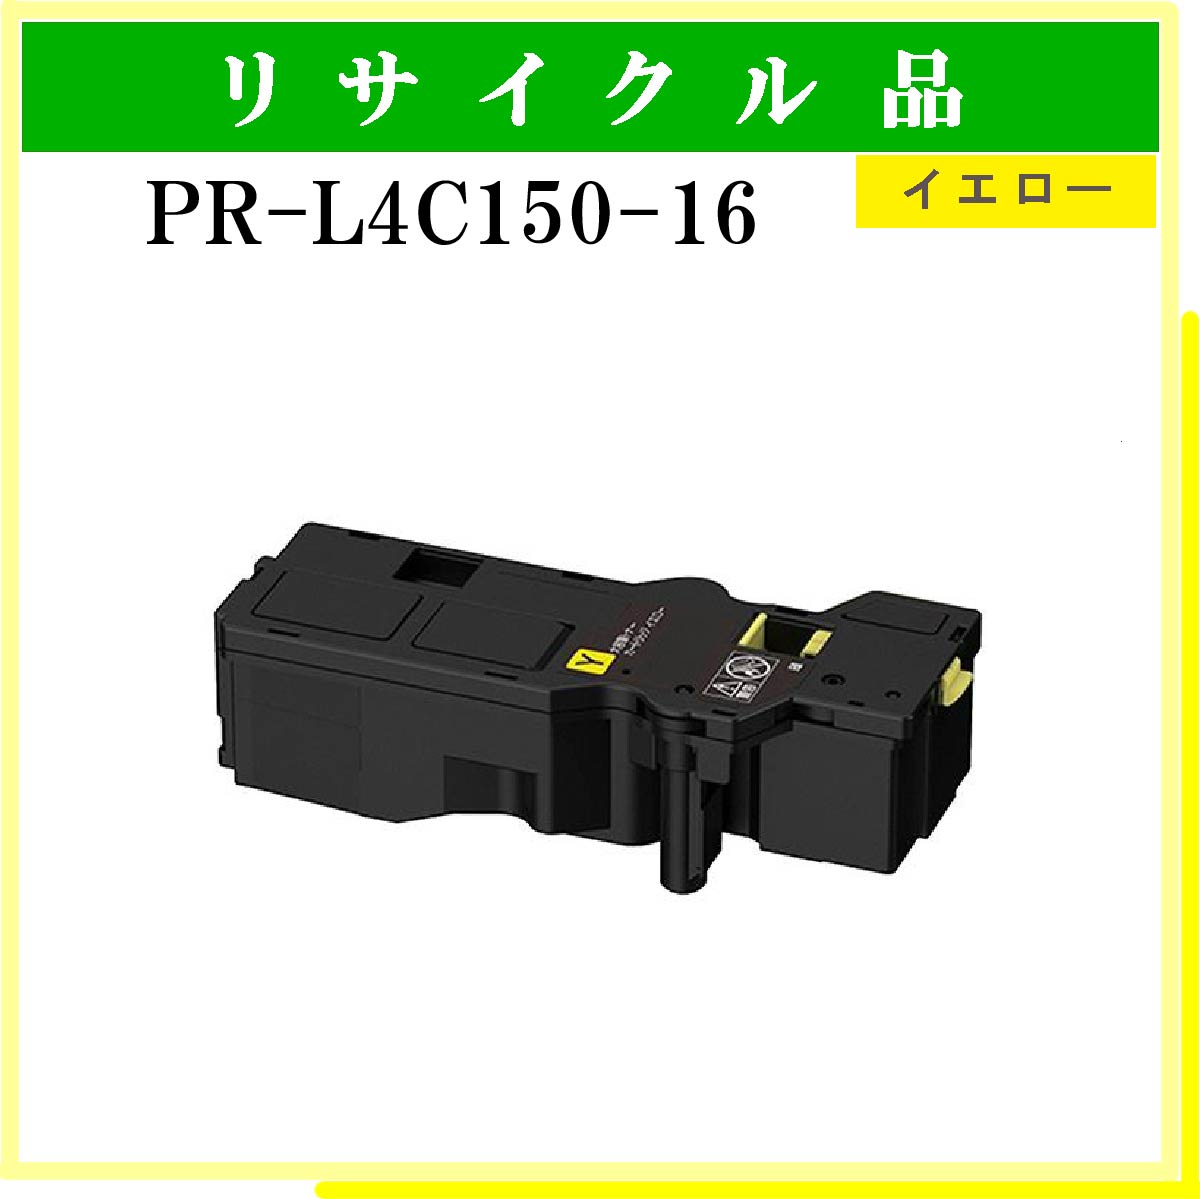 PR-L4C150-16